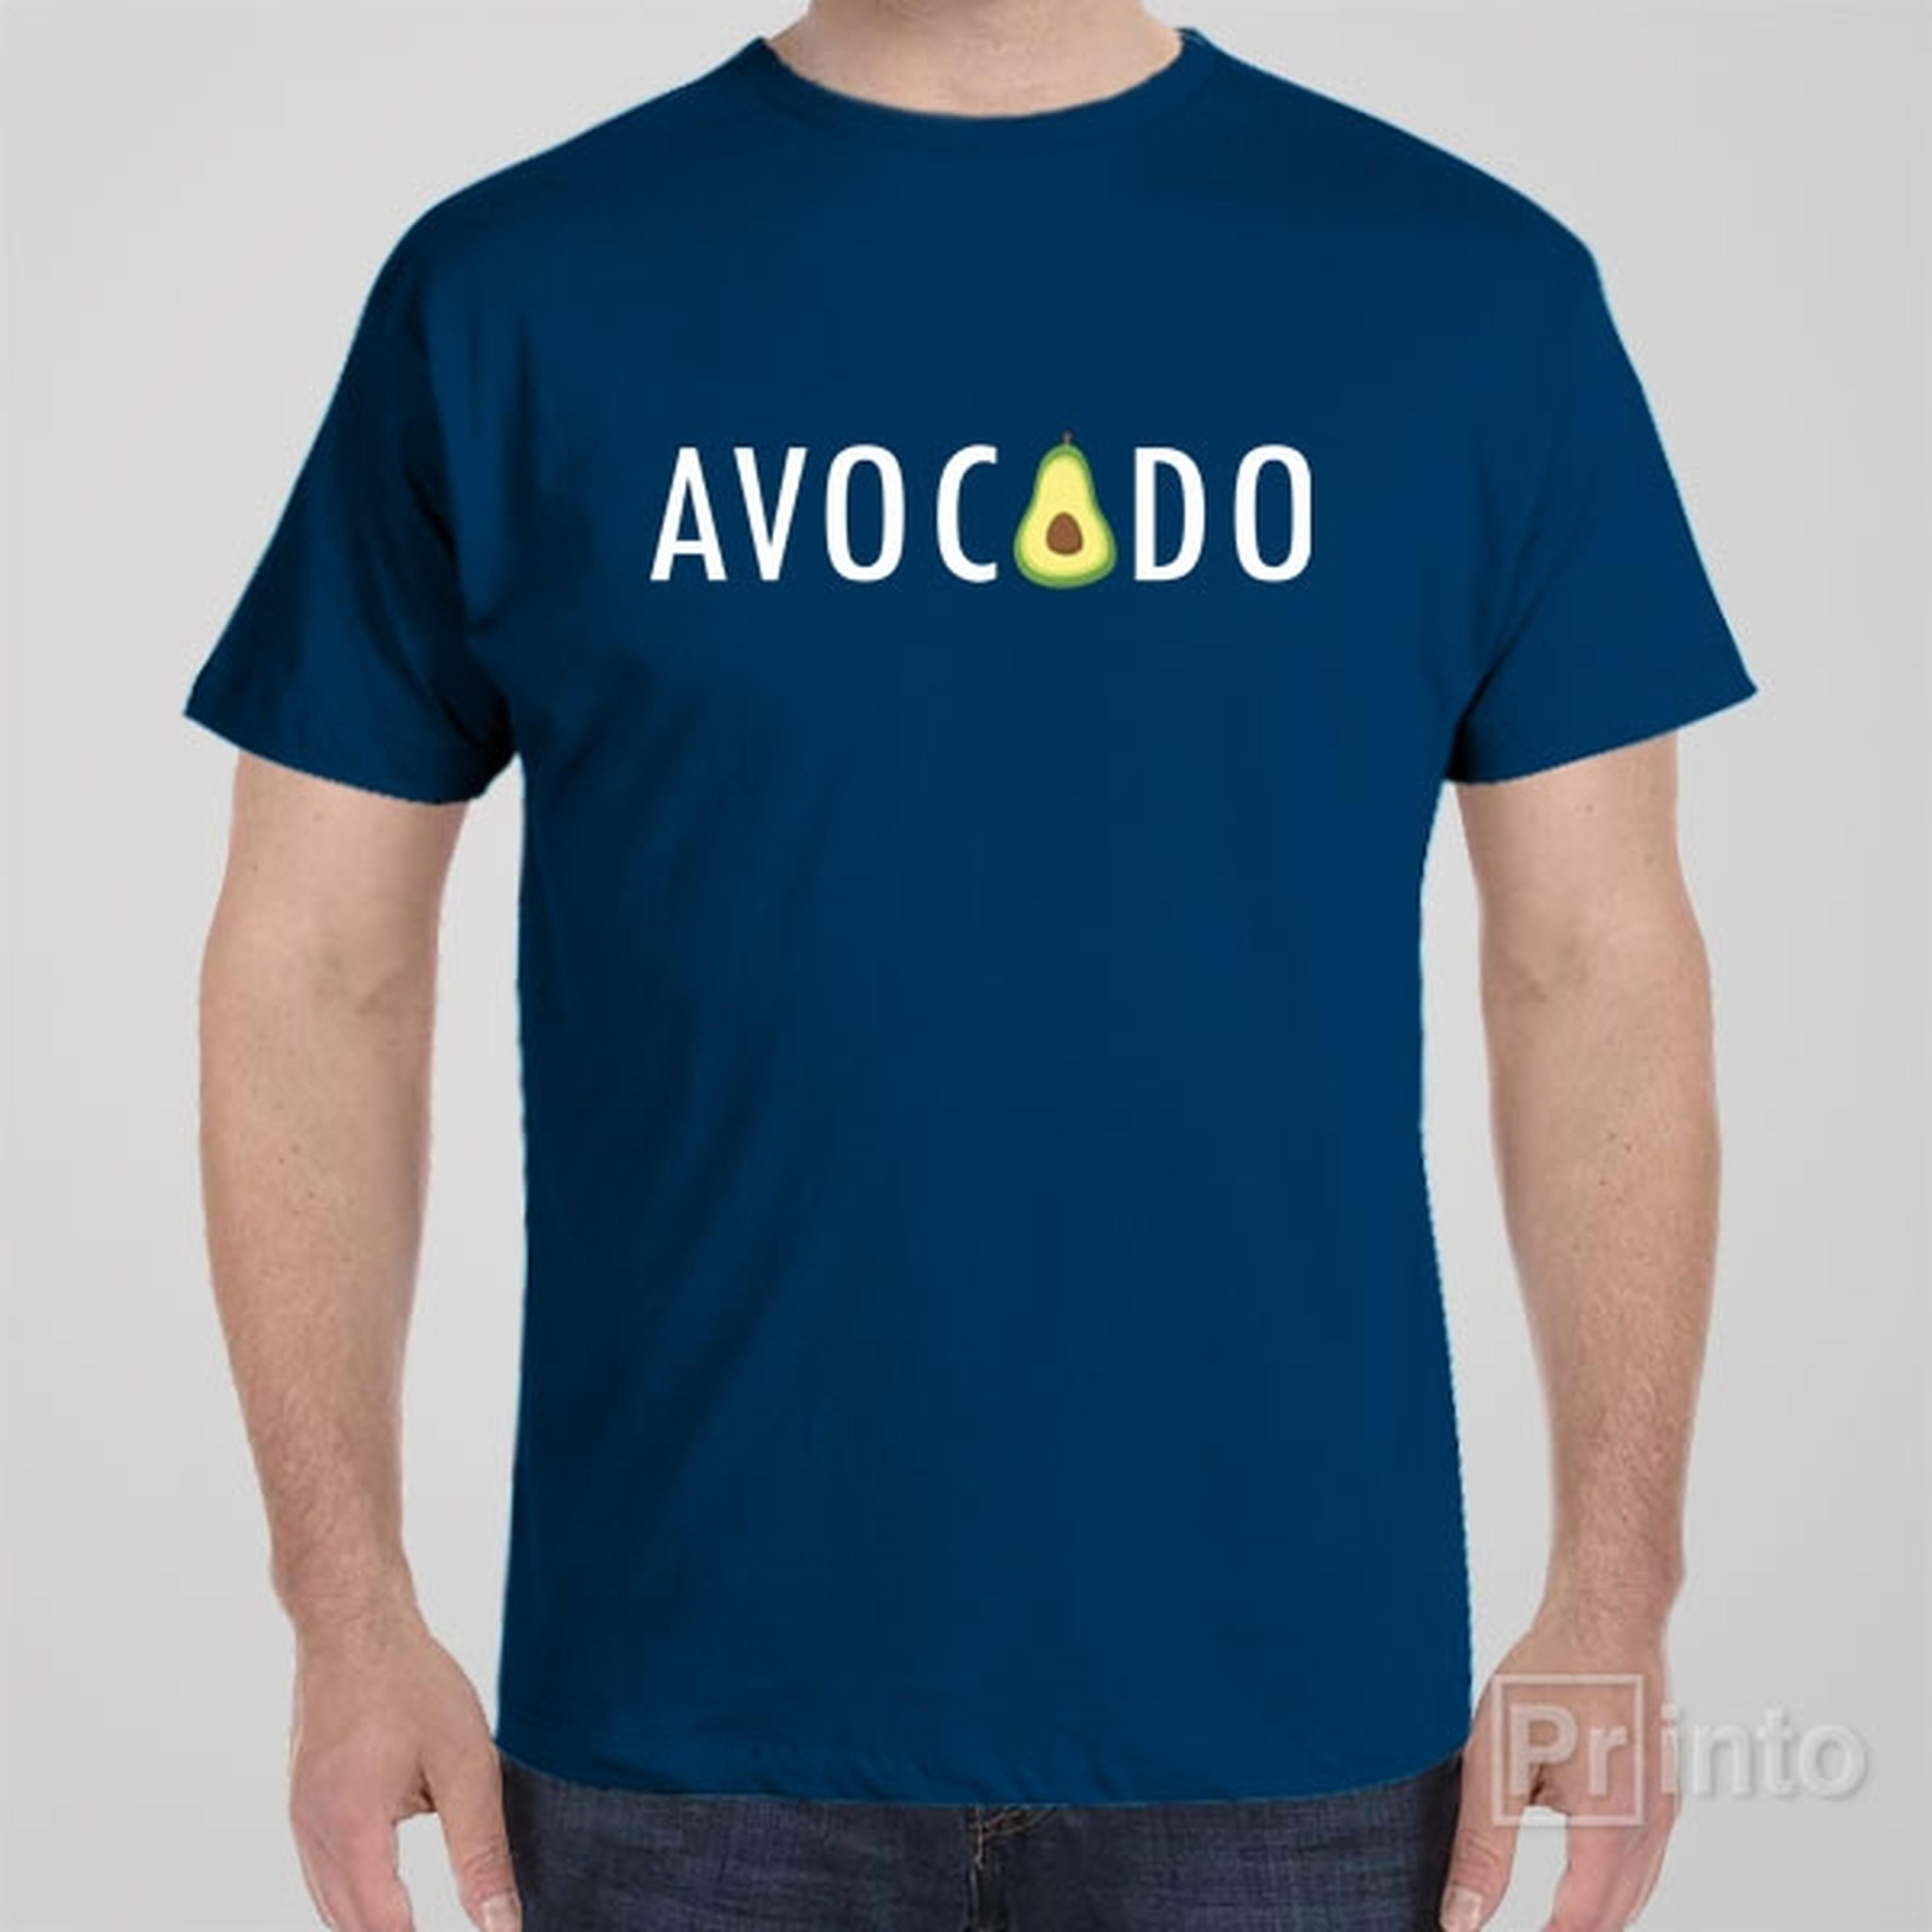 avocado-t-shirt